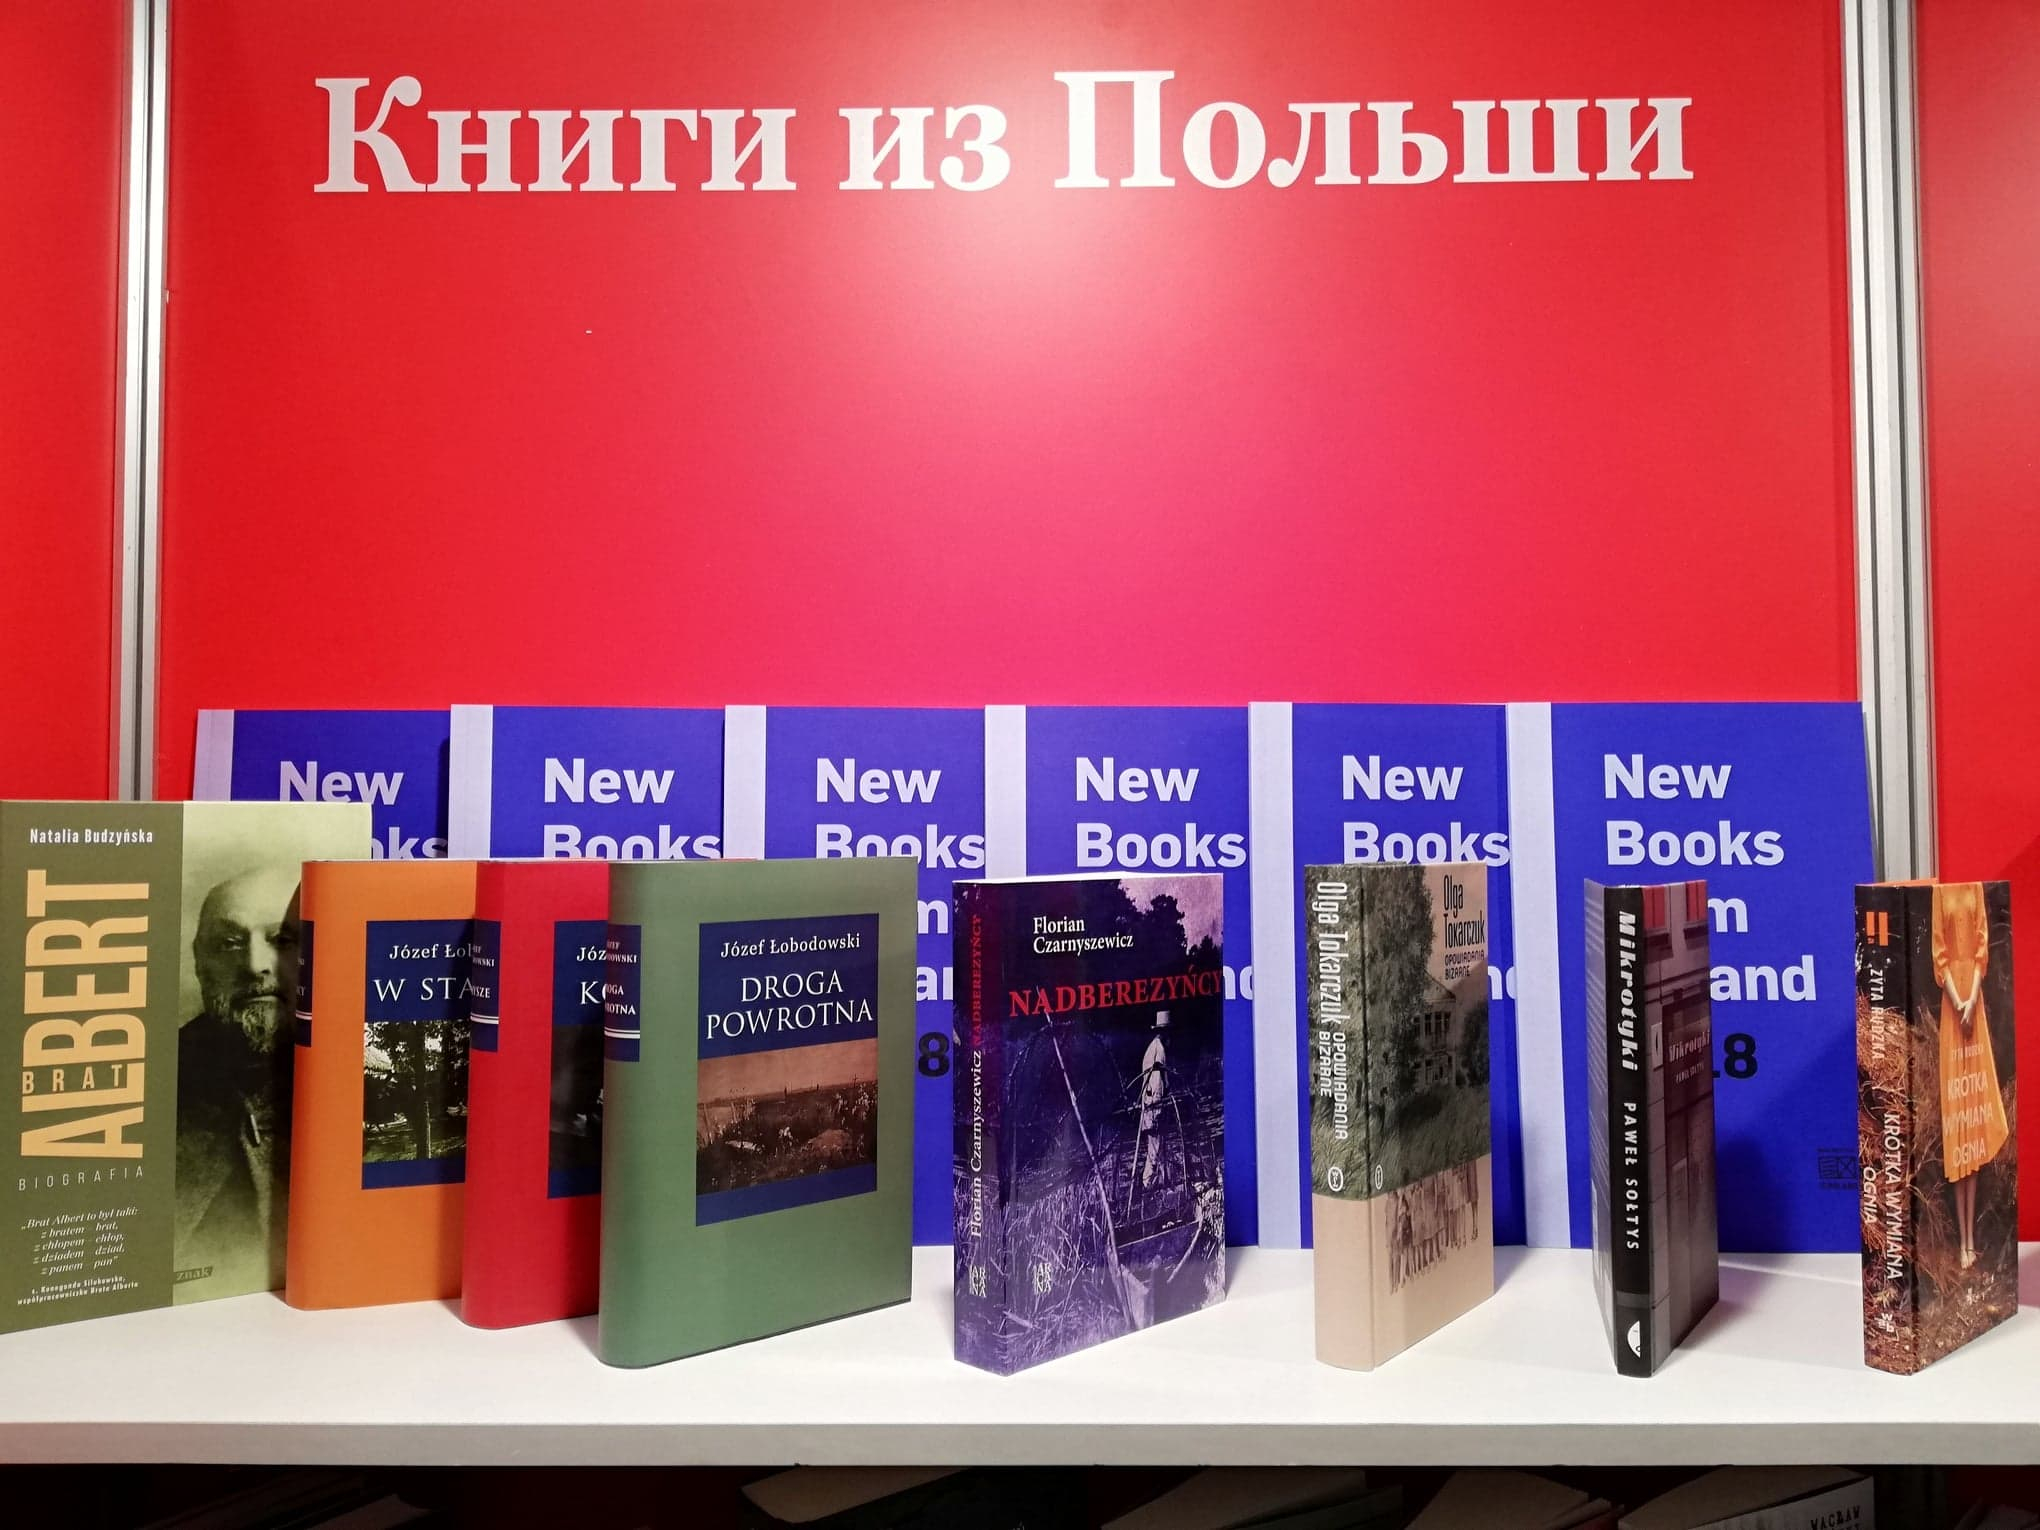 0. Międzynarodowe Targi Książki, Non/Fiction, Moskwa, 